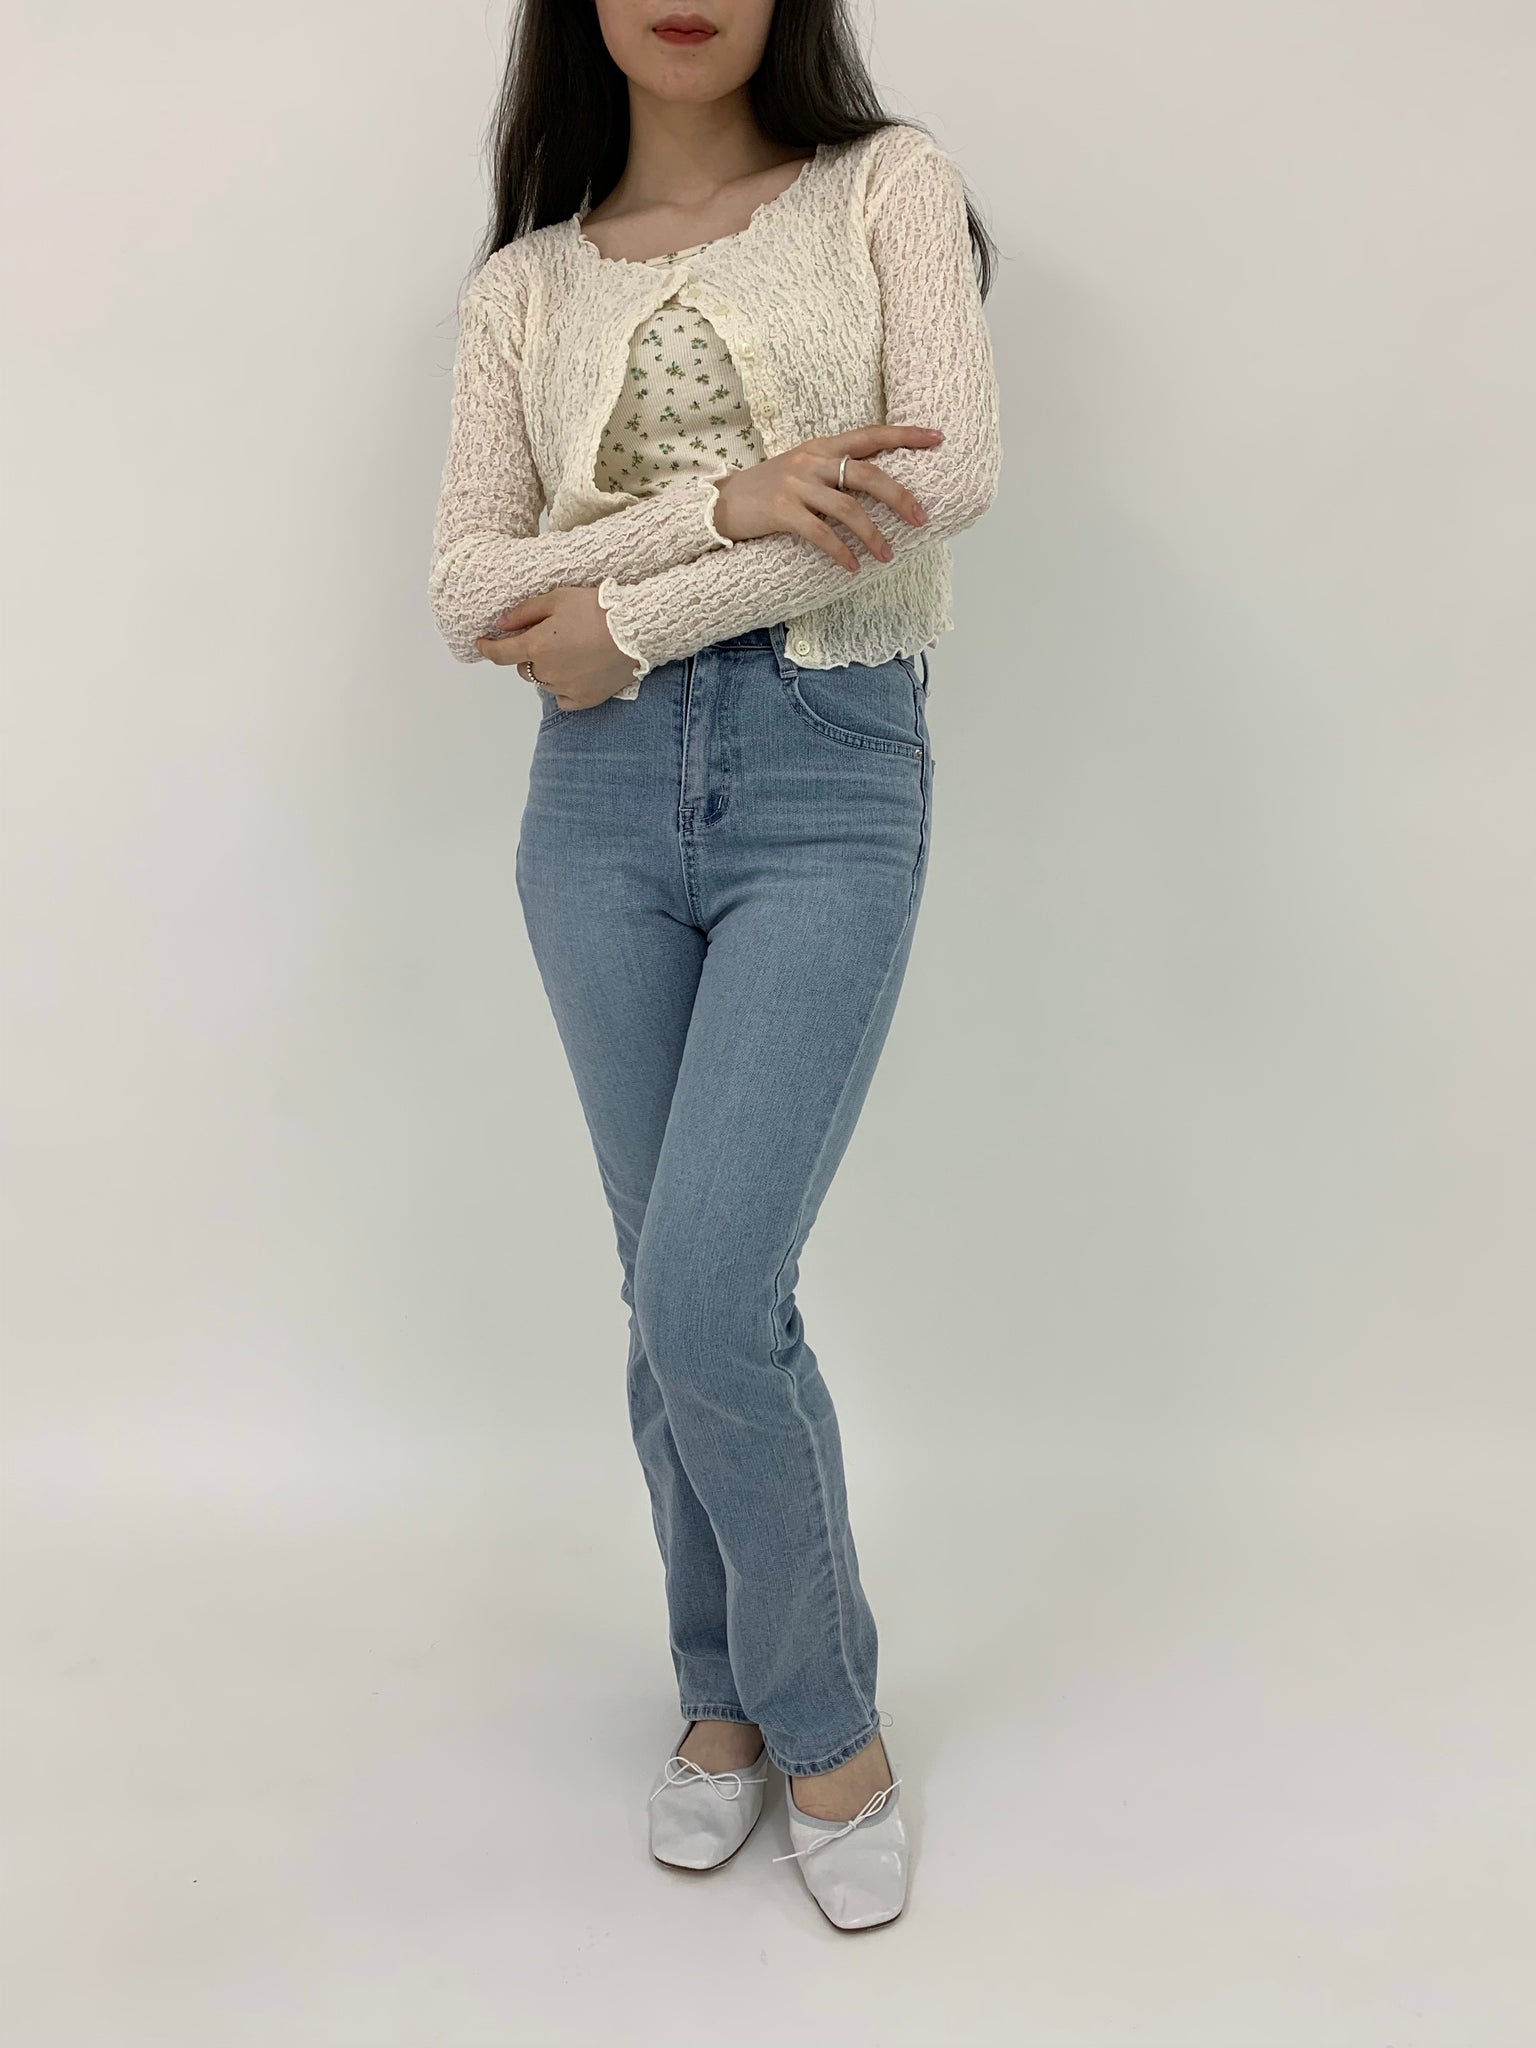 江ノ島デートの服装15選 女性編 気をつけるポイントやおすすめのコーデをご紹介 Papermoon Tokyo ペーパームーン 公式通販サイト